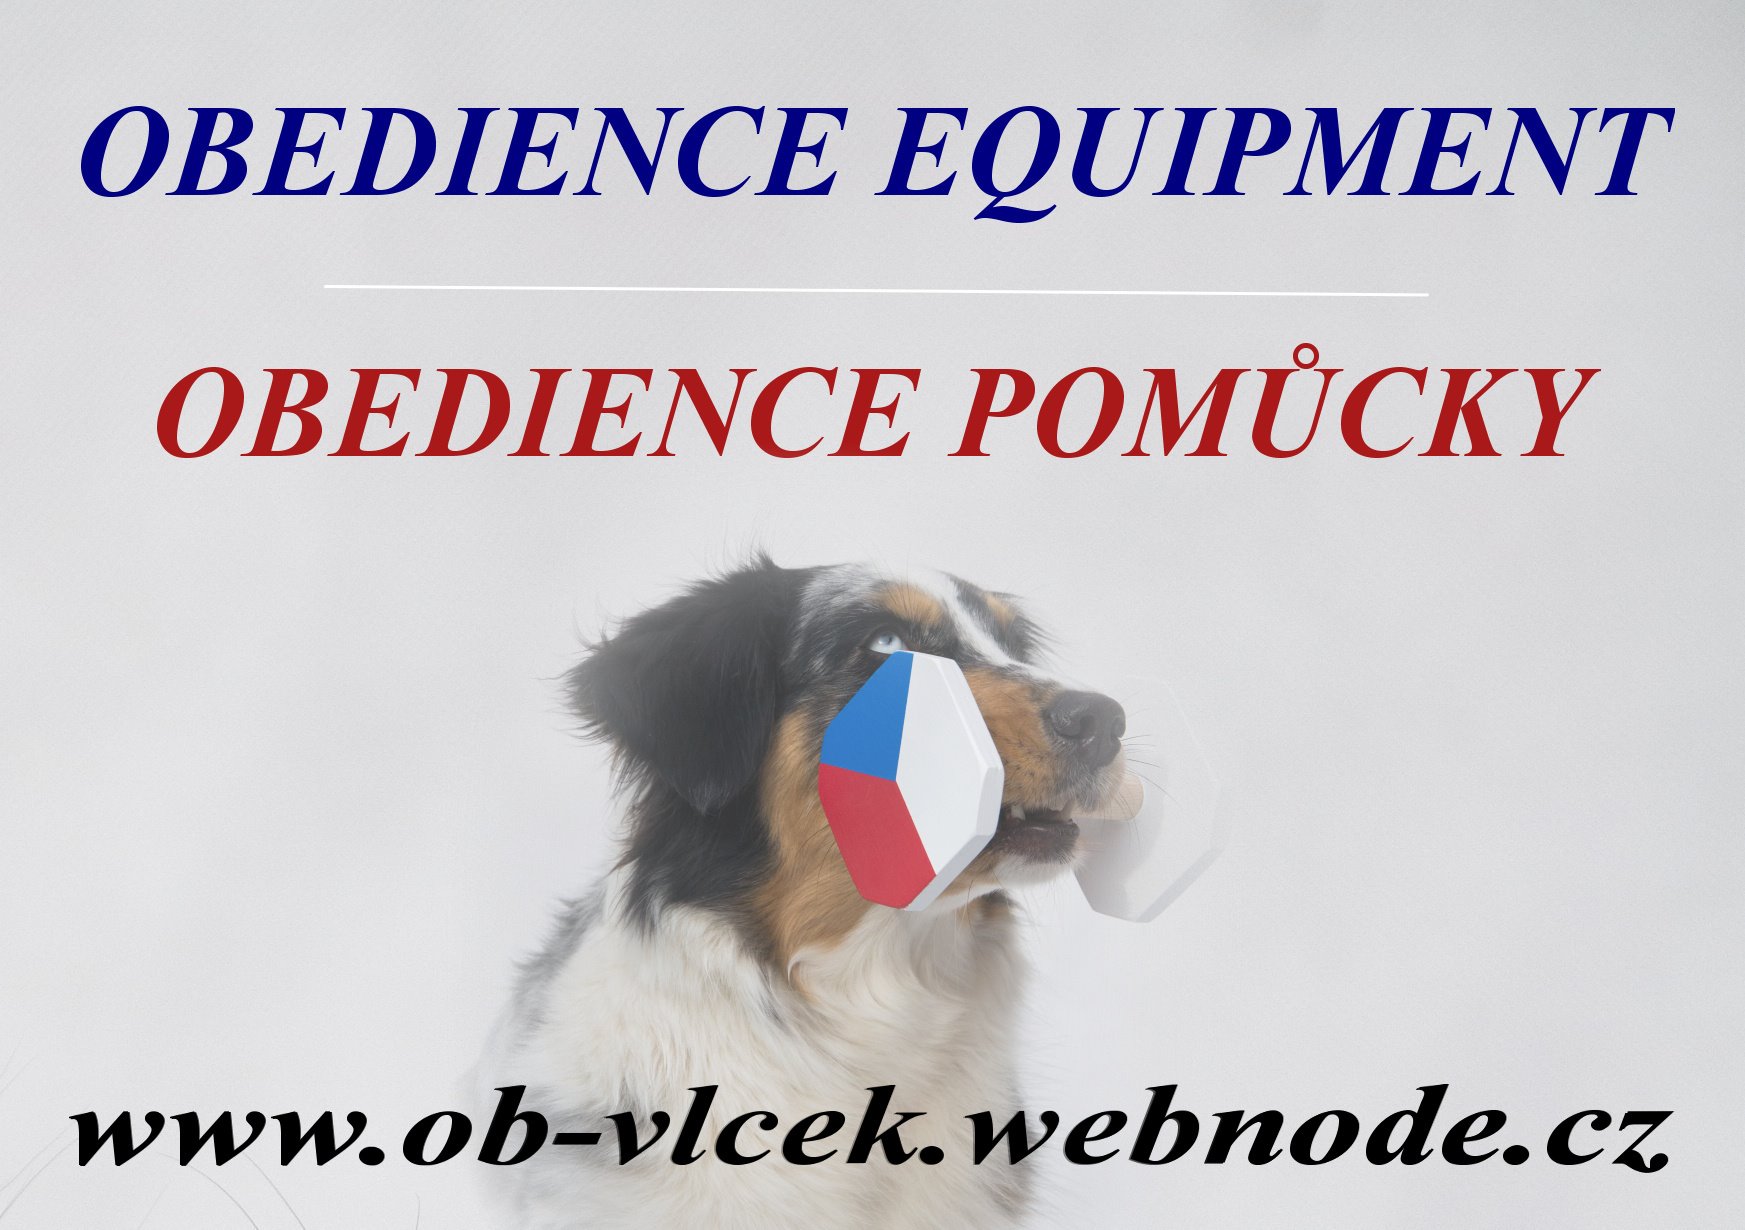 Obedience pomcky